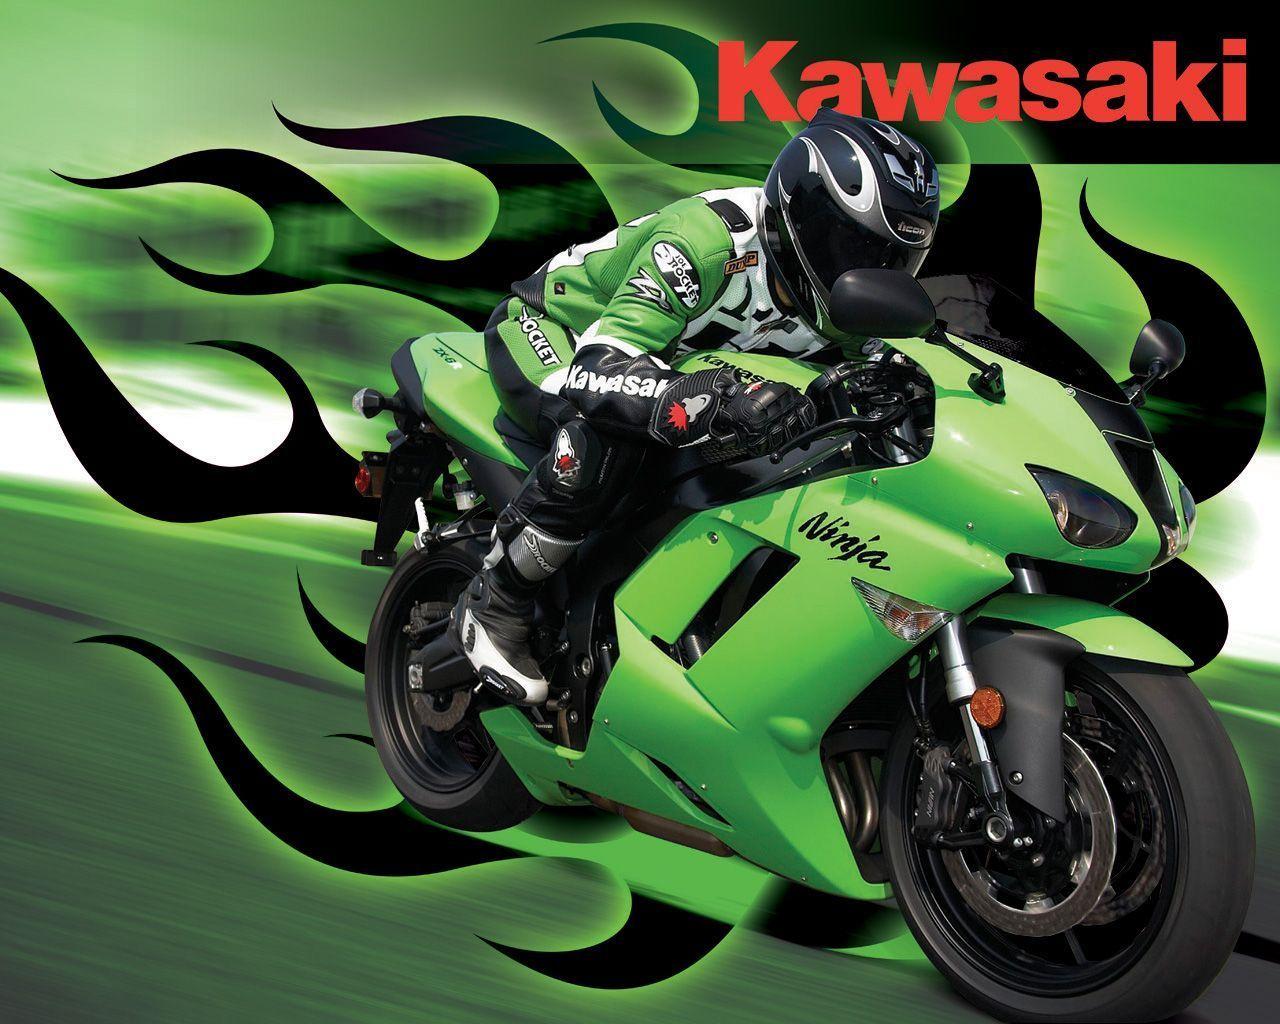 46 Kawasaki Ninja Wallpaper HD  WallpaperSafari